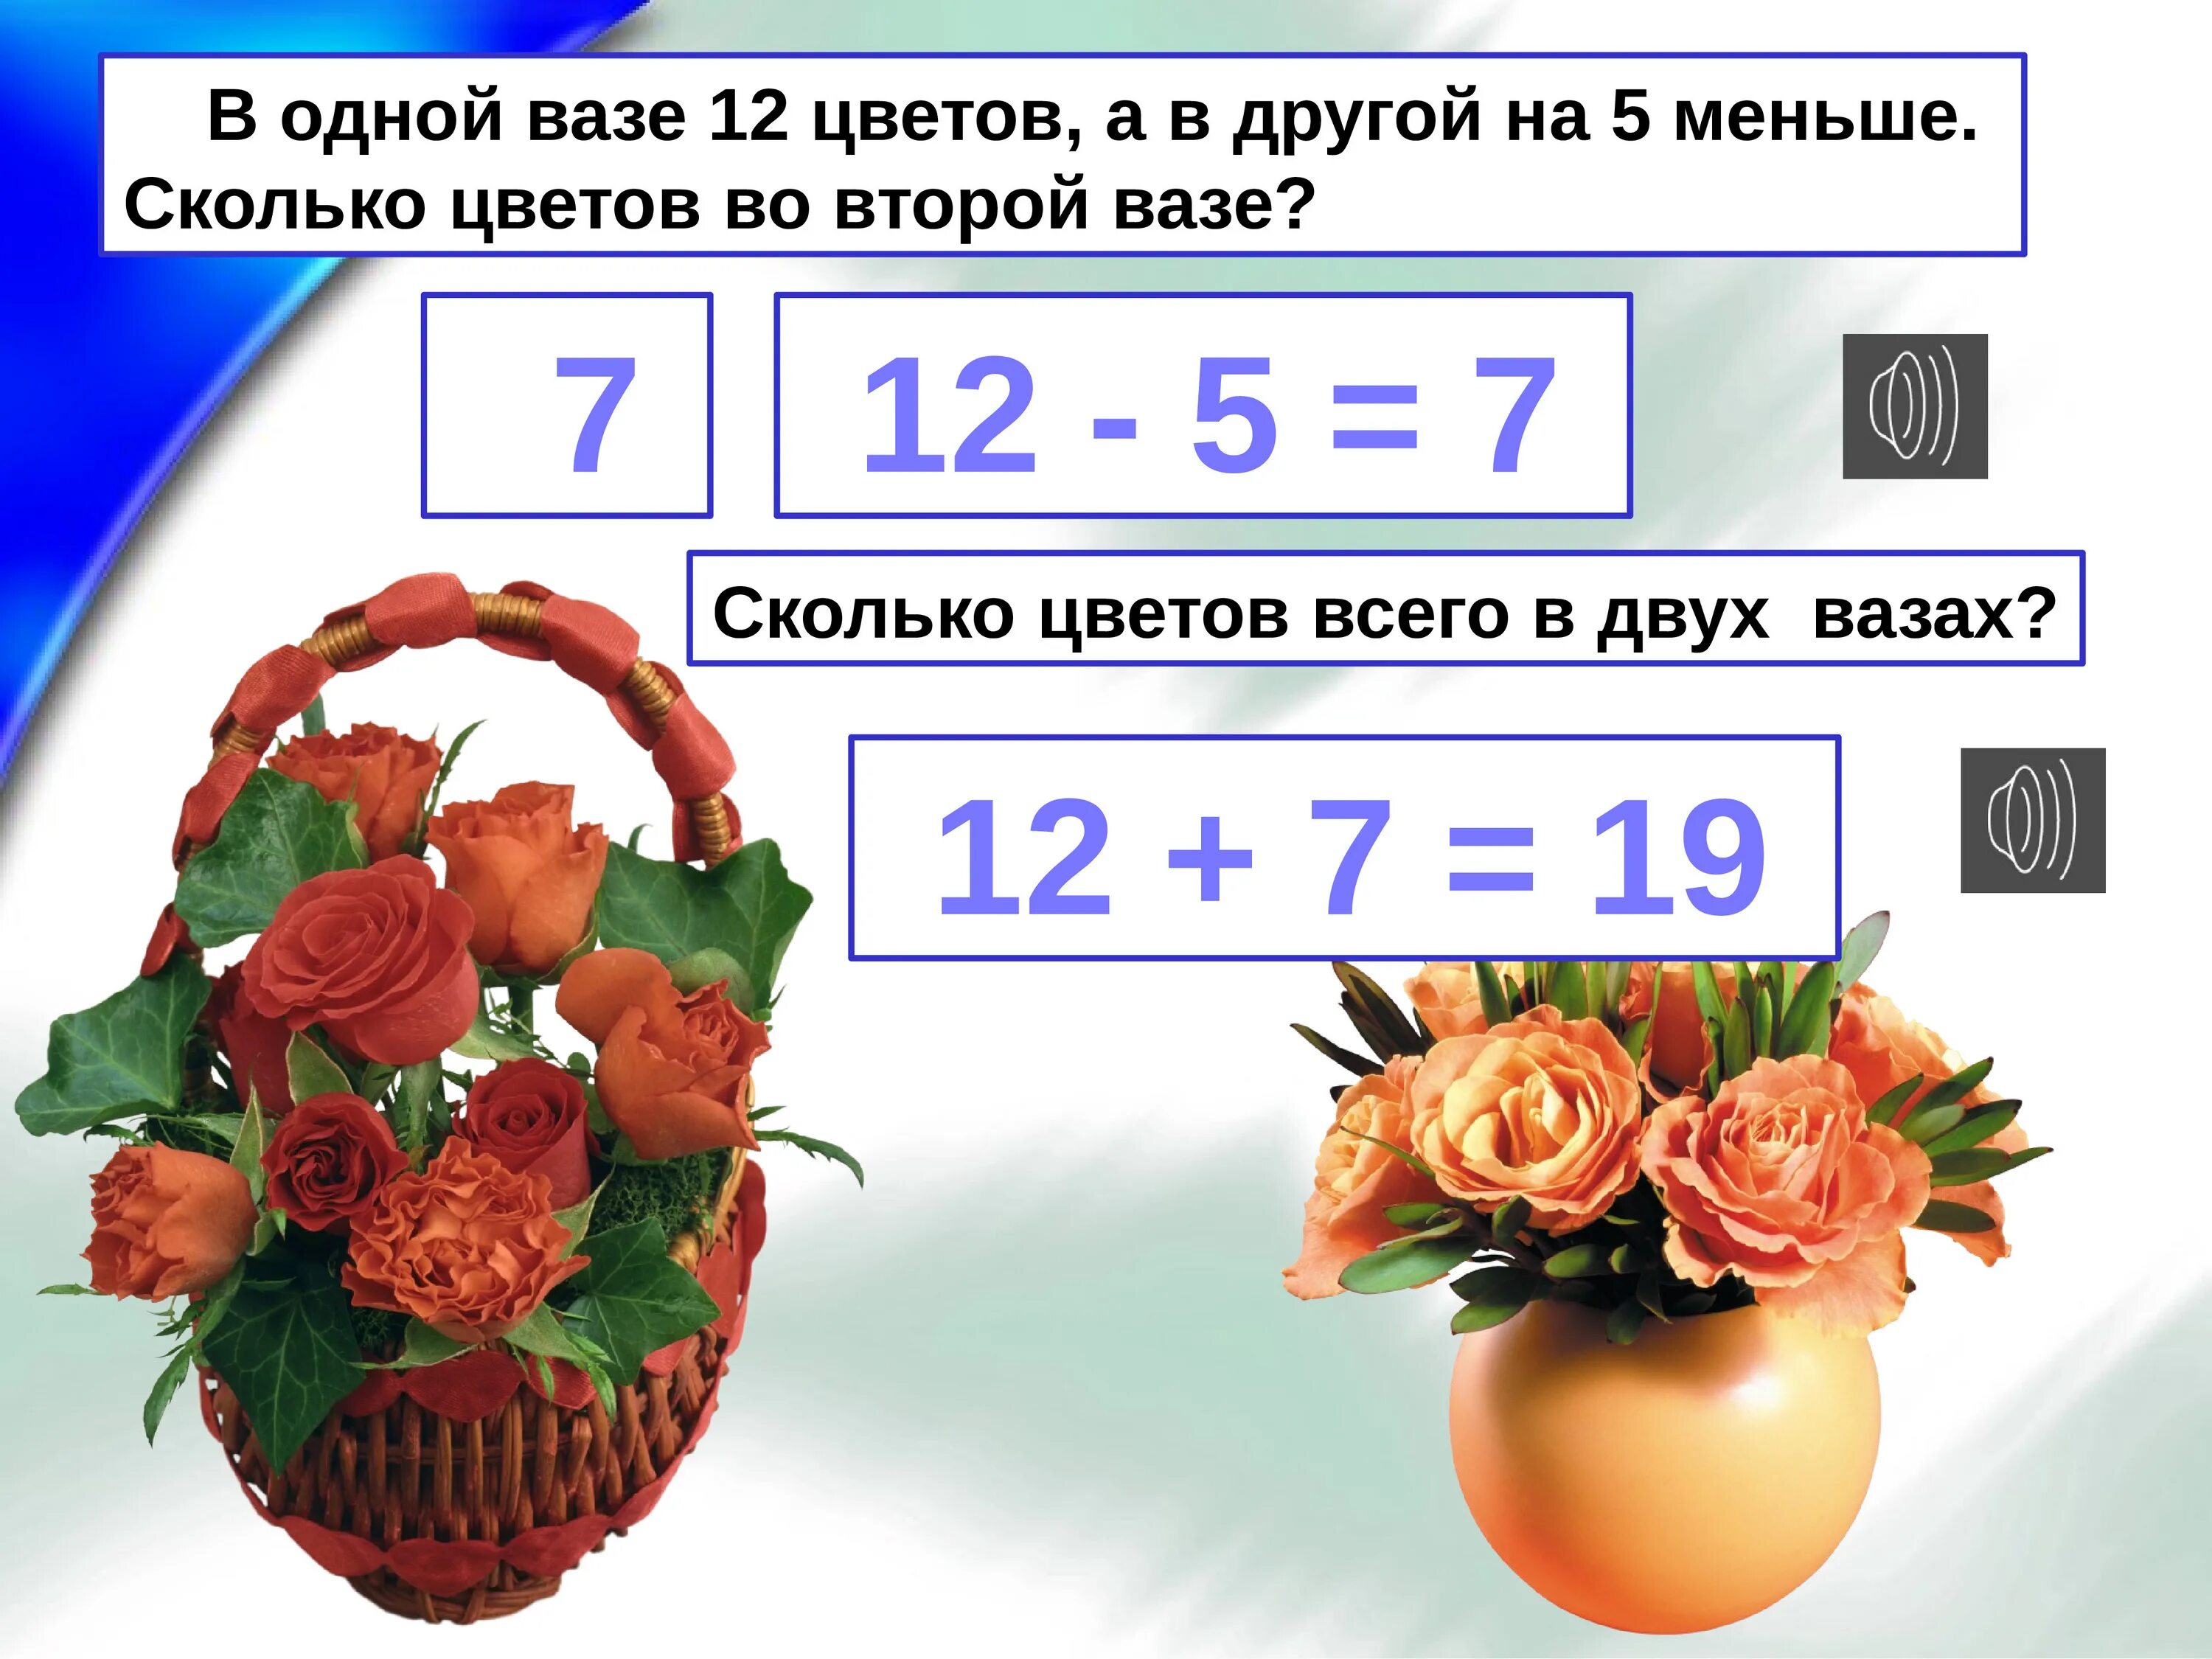 Сколько цветов в двух вазах. Первый класс сколько цветов в двух вазах. Сколько цветов в двух вазах 1 класс. Первой вазе 4 цветка а во второй -на цветок меньше.